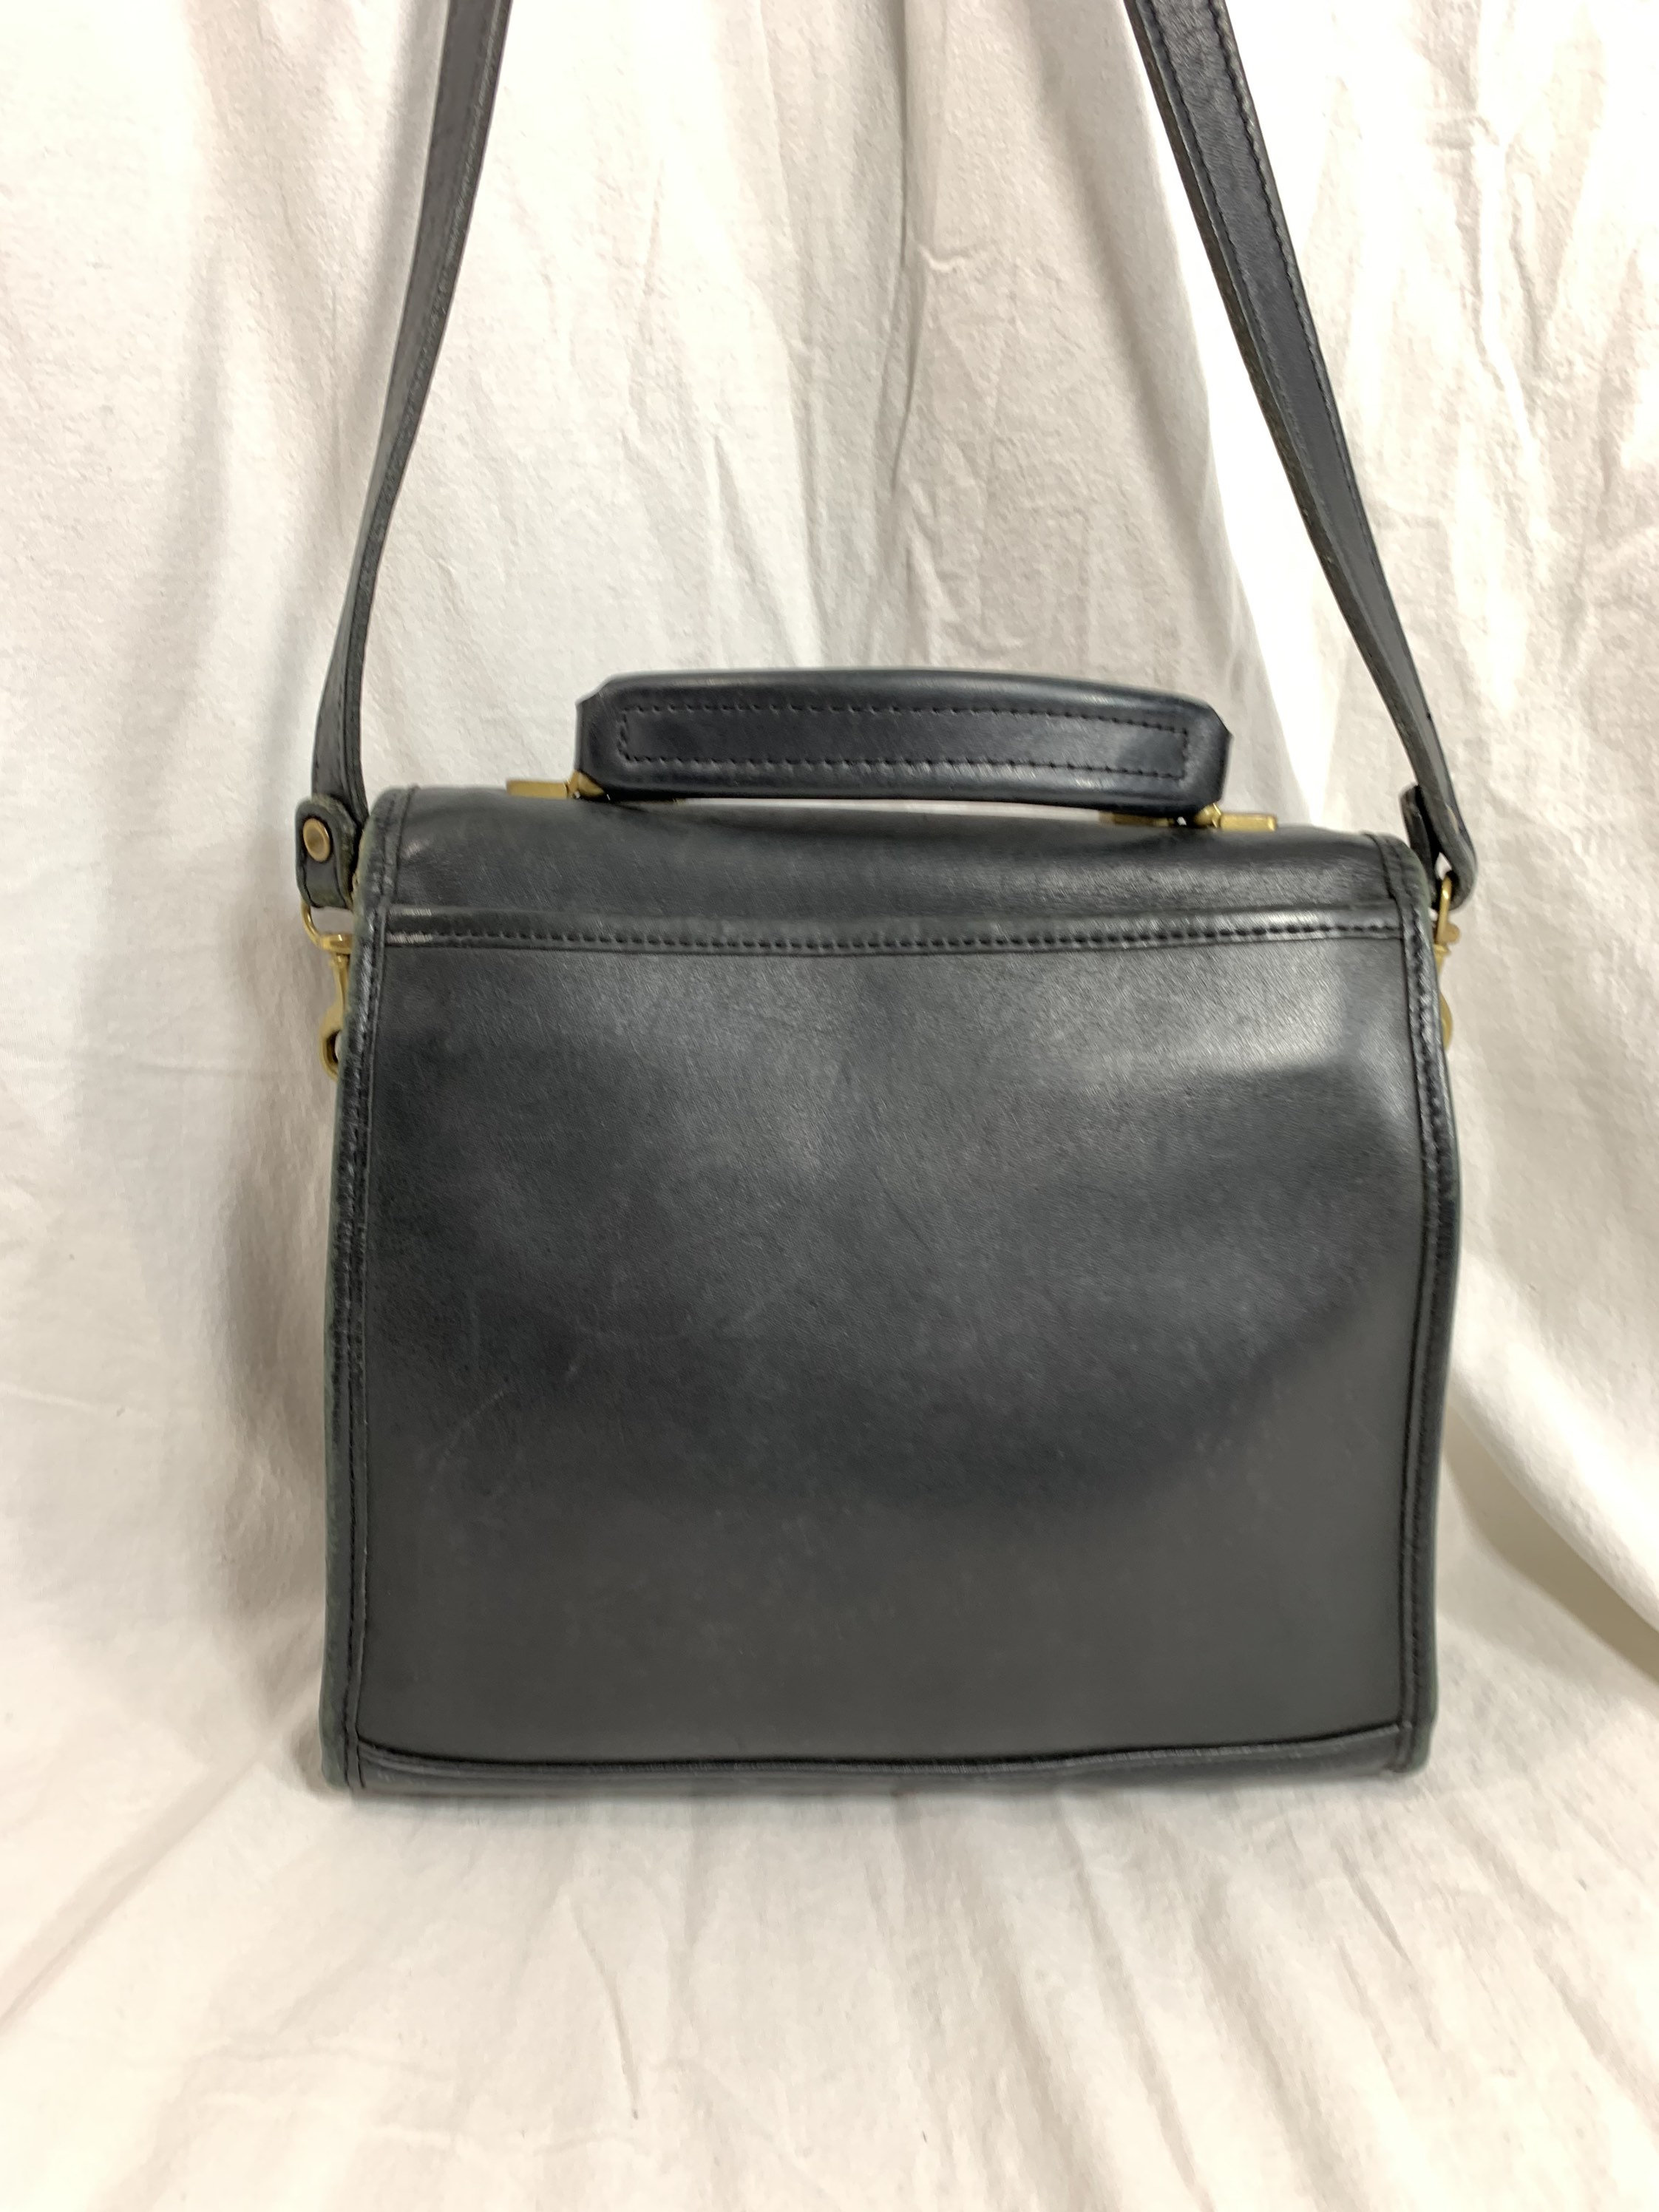 Vintage JACK GEORGES Black Leather Top Handle Shoulder Bag | Etsy